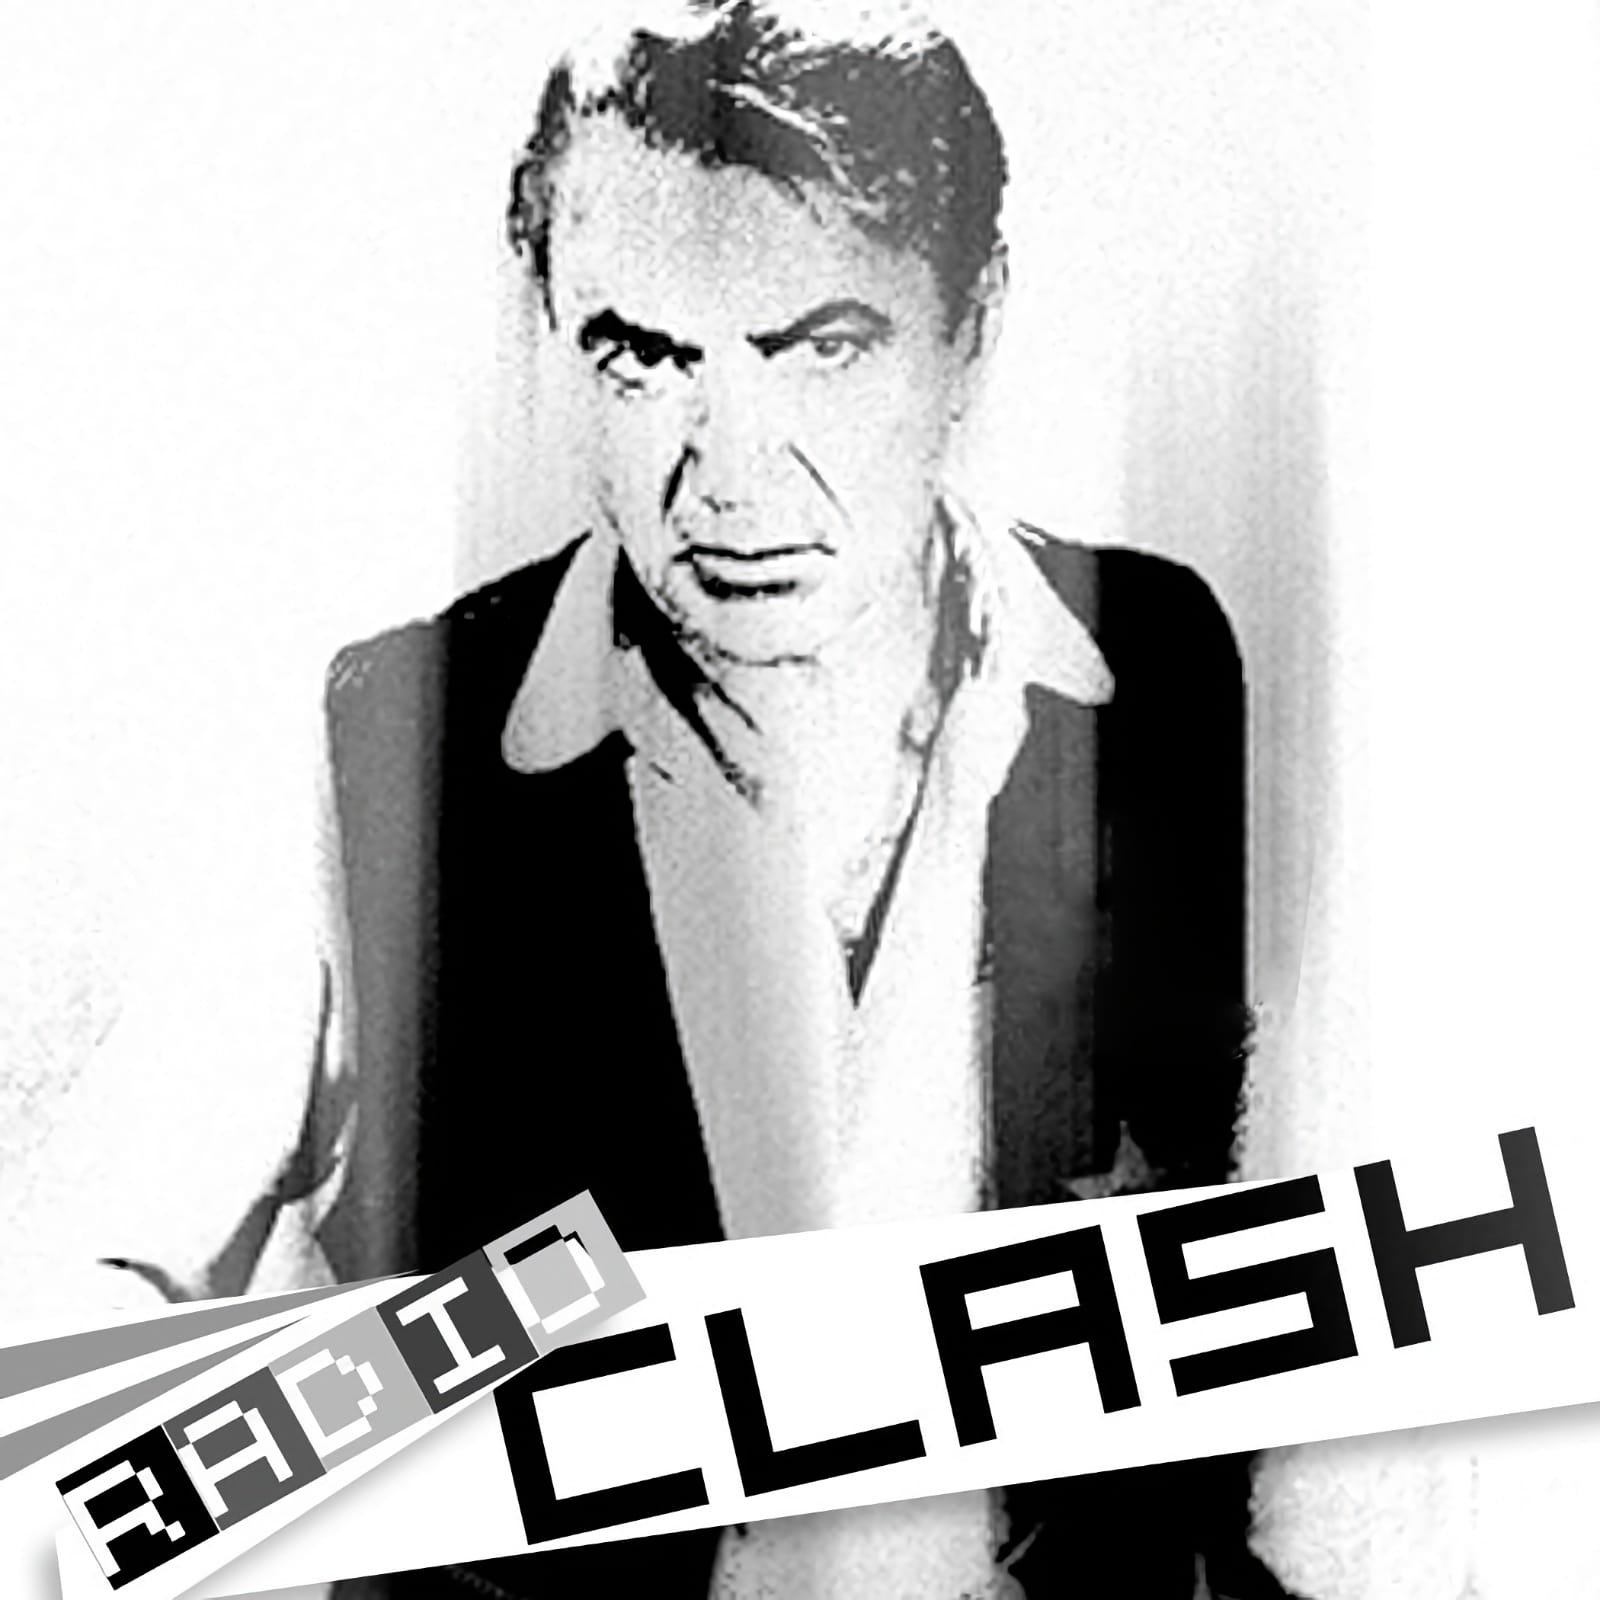 Radio Clash promos